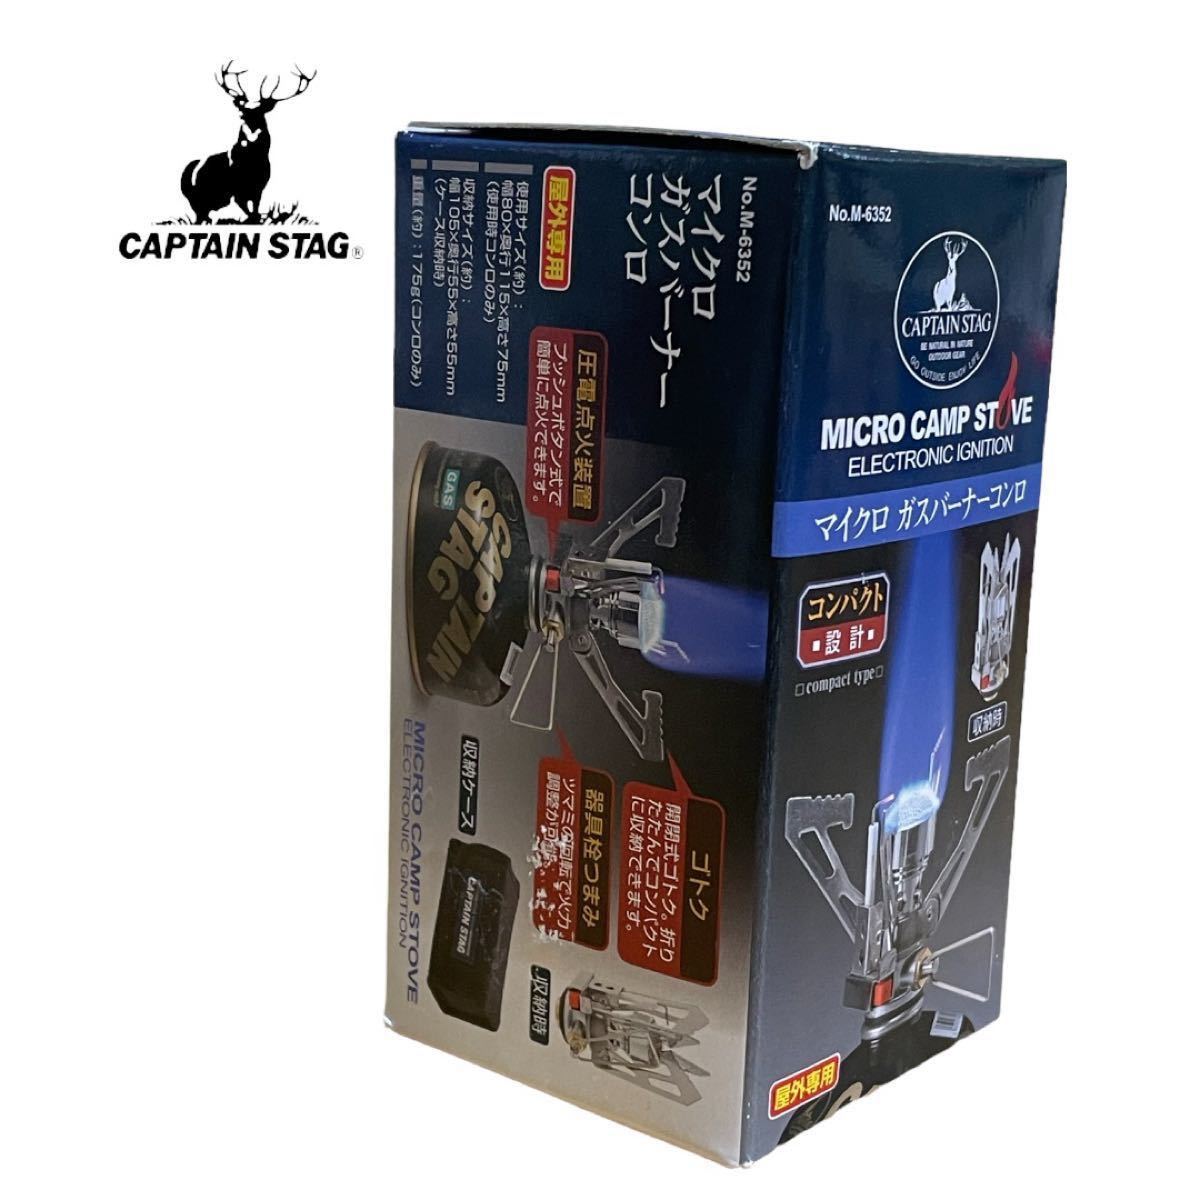 キャプテンスタッグ(CAPTAIN STAG) マイクロ ガスバーナーコンロ M-6352 新品